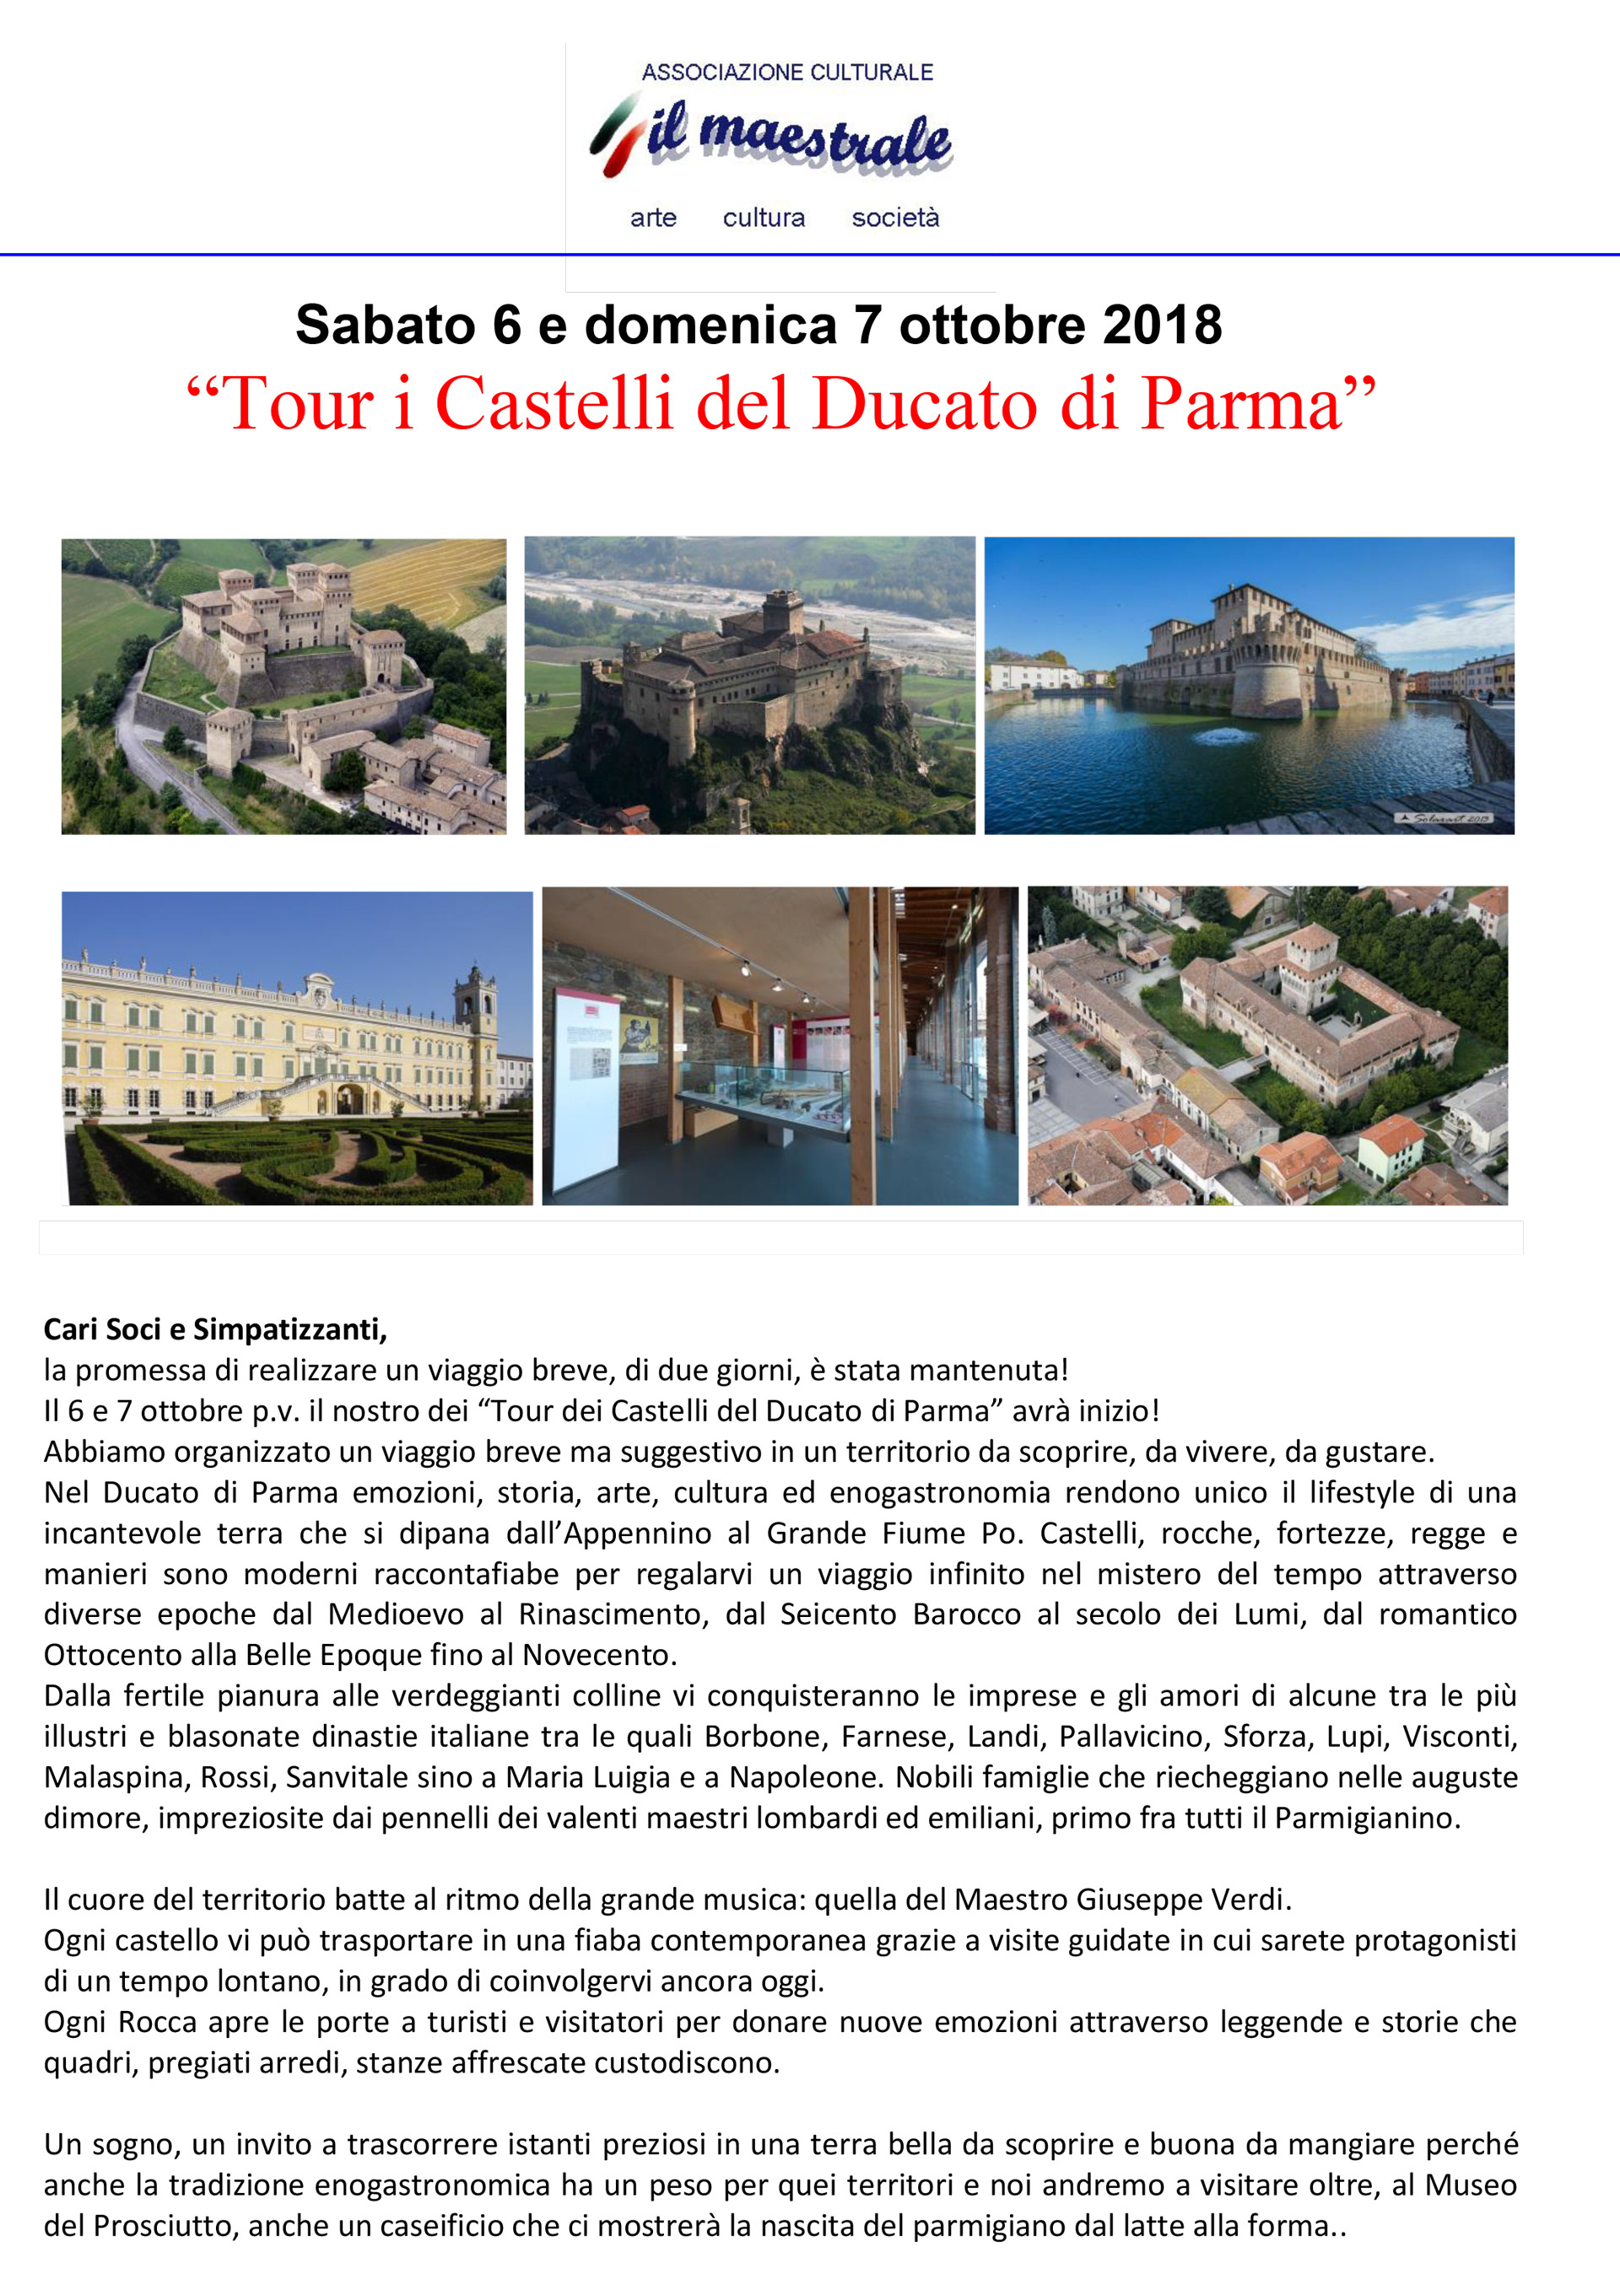 Sabato 6 e domenica 7 ottobre 2018 “Tour i Castelli del Ducato di Parma”